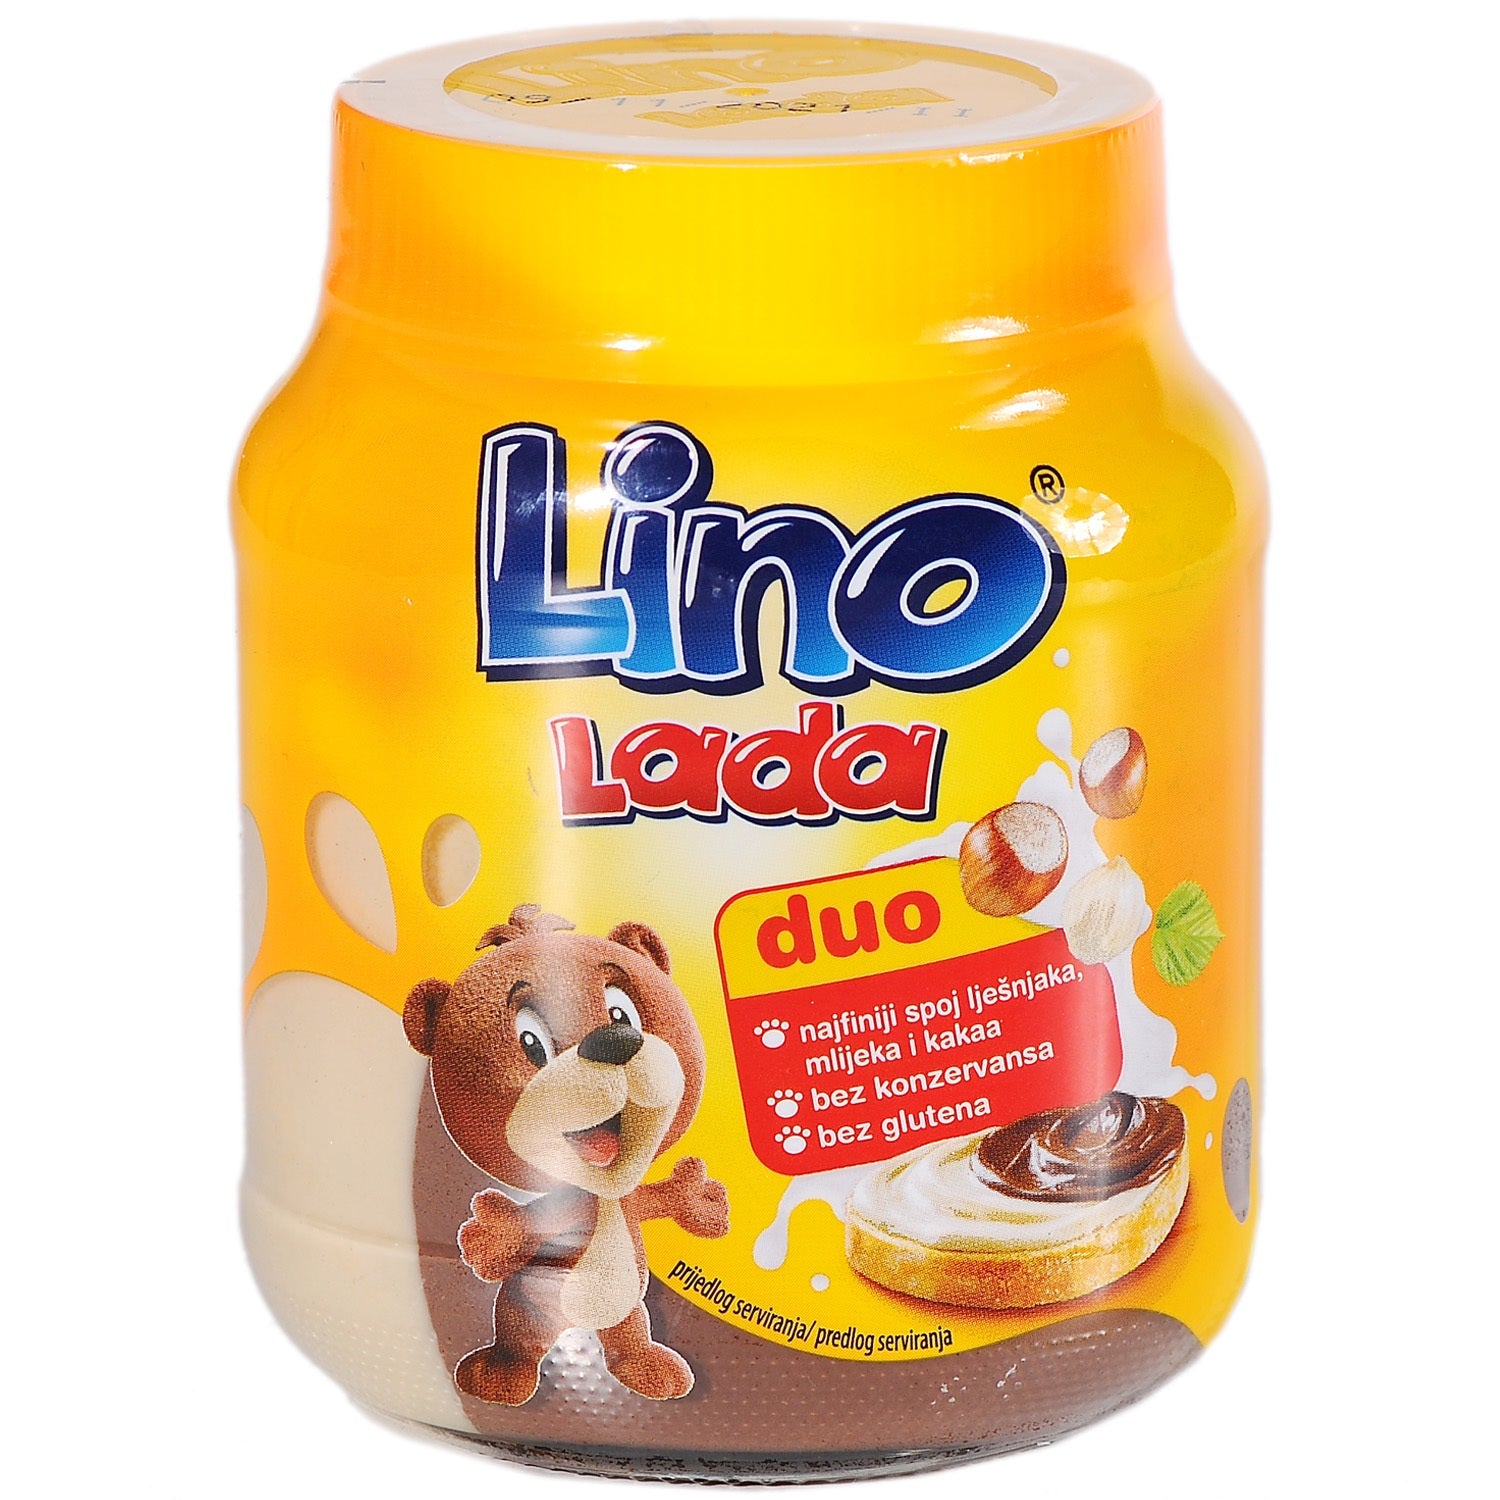 aga>Duo Spread Lino Lada 400g - Podravka